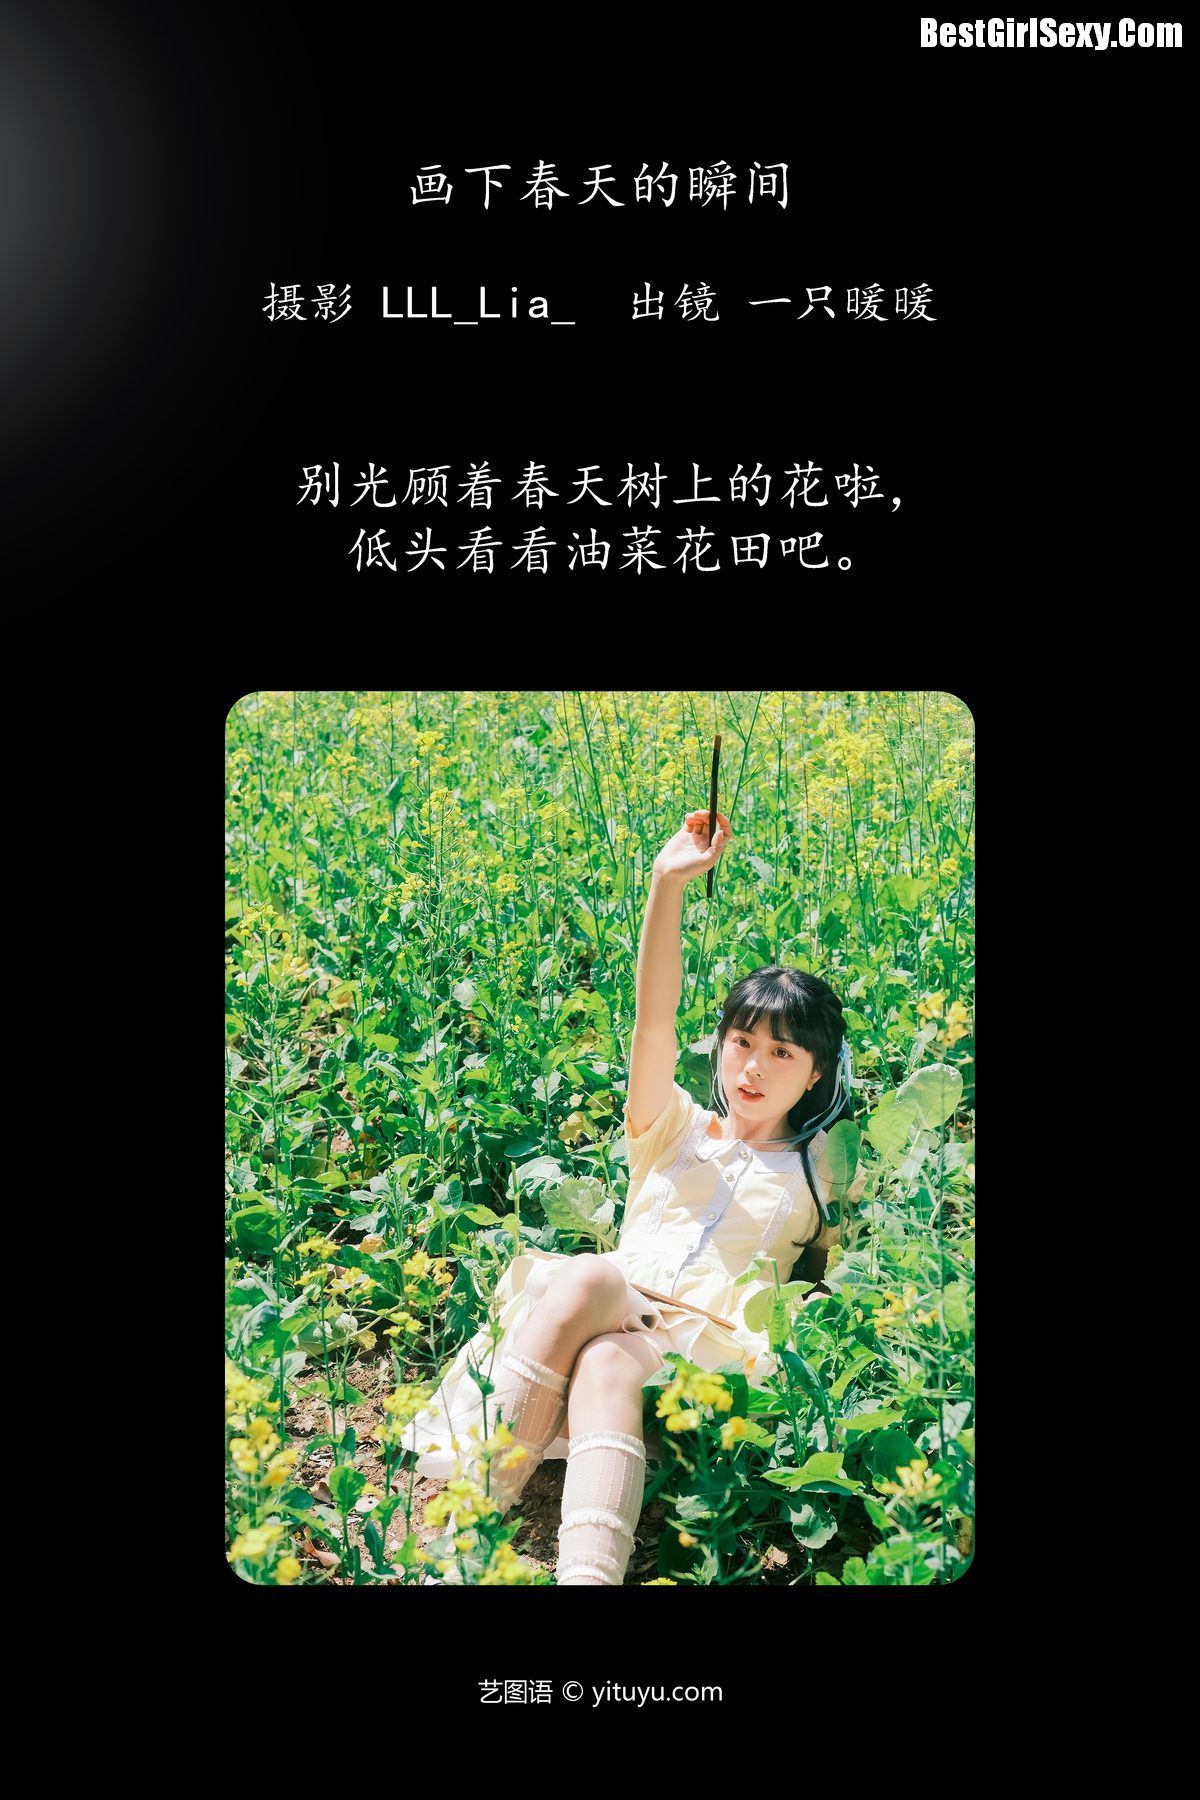 YiTuYu艺图语 Vol 4068 Yi Zhi Nuan Nuan 0002 2150717460.jpg